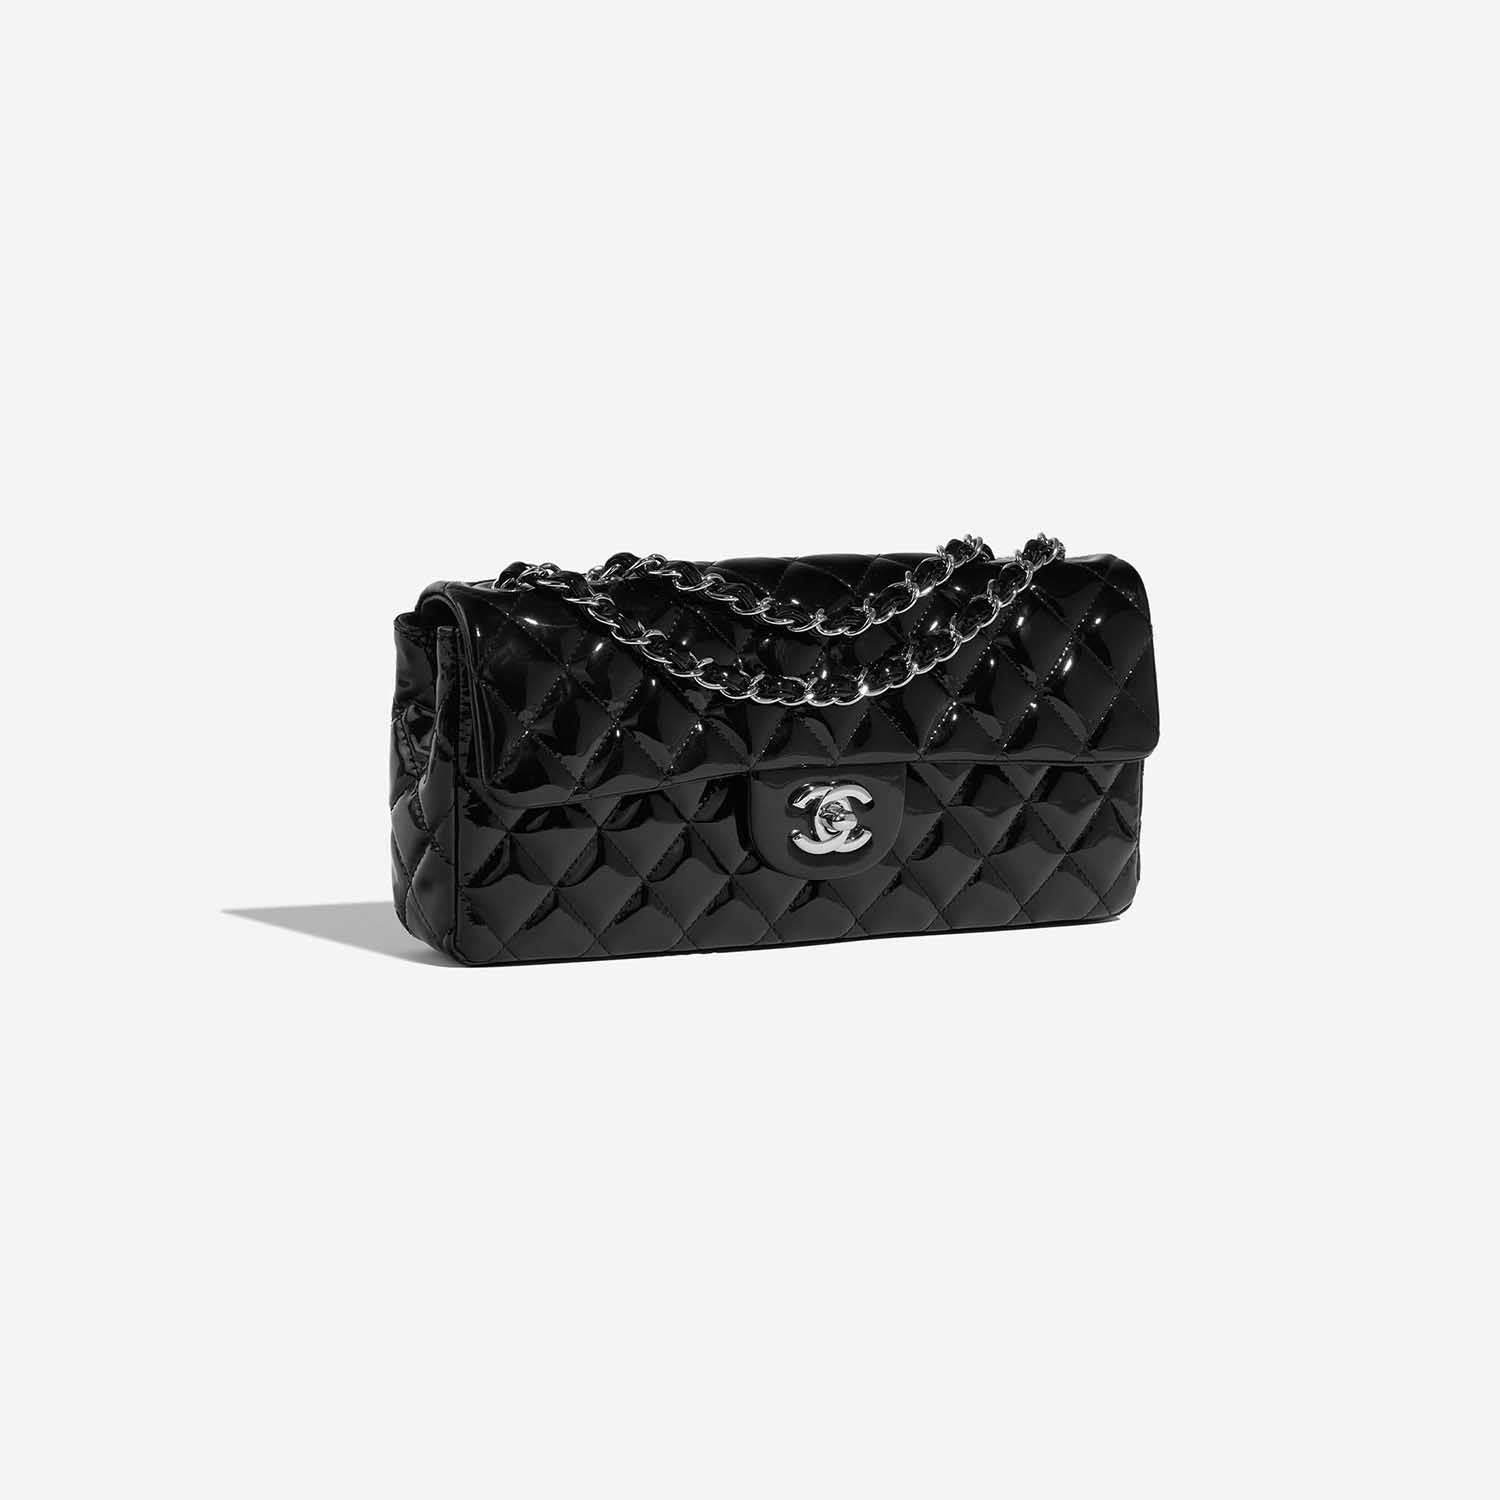 Chanel Timeless Medium Black Side Front | Verkaufen Sie Ihre Designer-Tasche auf Saclab.com